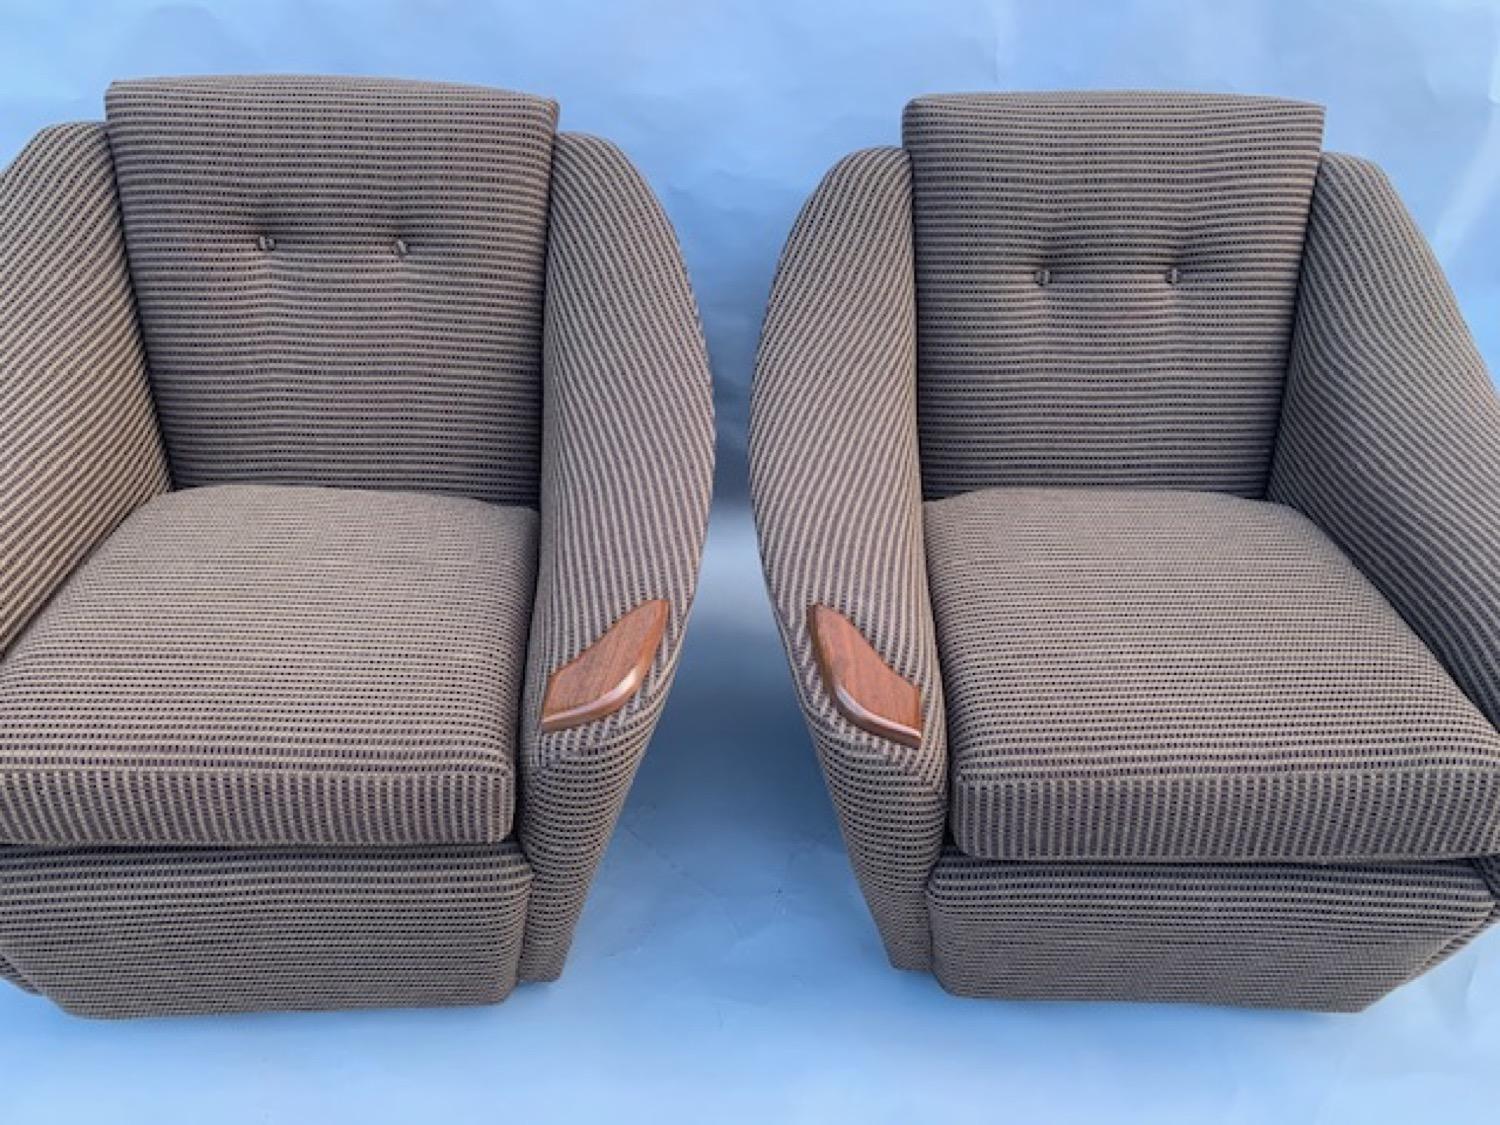 Zwei klassische Sessel aus den 1960er Jahren, vollständig restauriert und neu gepolstert mit dem Stoff Kilmory chocolate von Bute Fabrics (feiner, aus Kammgarn gewebter Seersuckerstoff). Jeder Stuhl steht auf vier voll funktionsfähigen kleinen